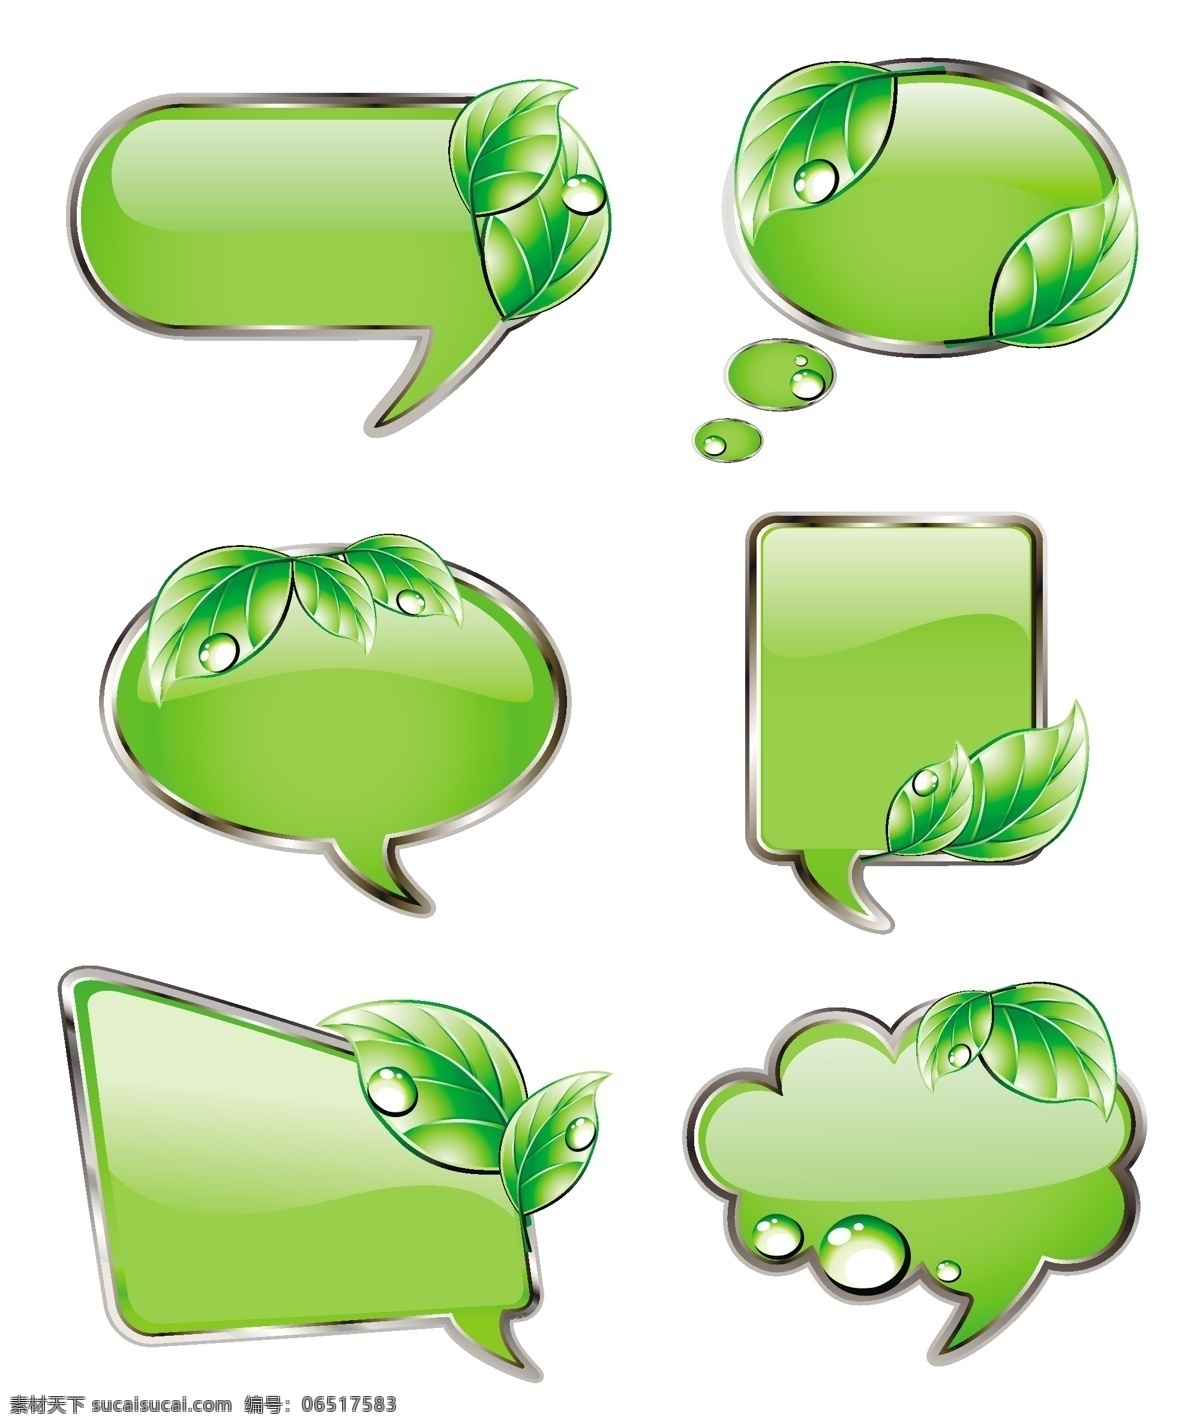 绿色植物 对话框 炫彩 透明 线条 高光 质感 玻璃质感 绿色 植物 环保 水滴 边框相框 底纹边框 矢量素材 白色